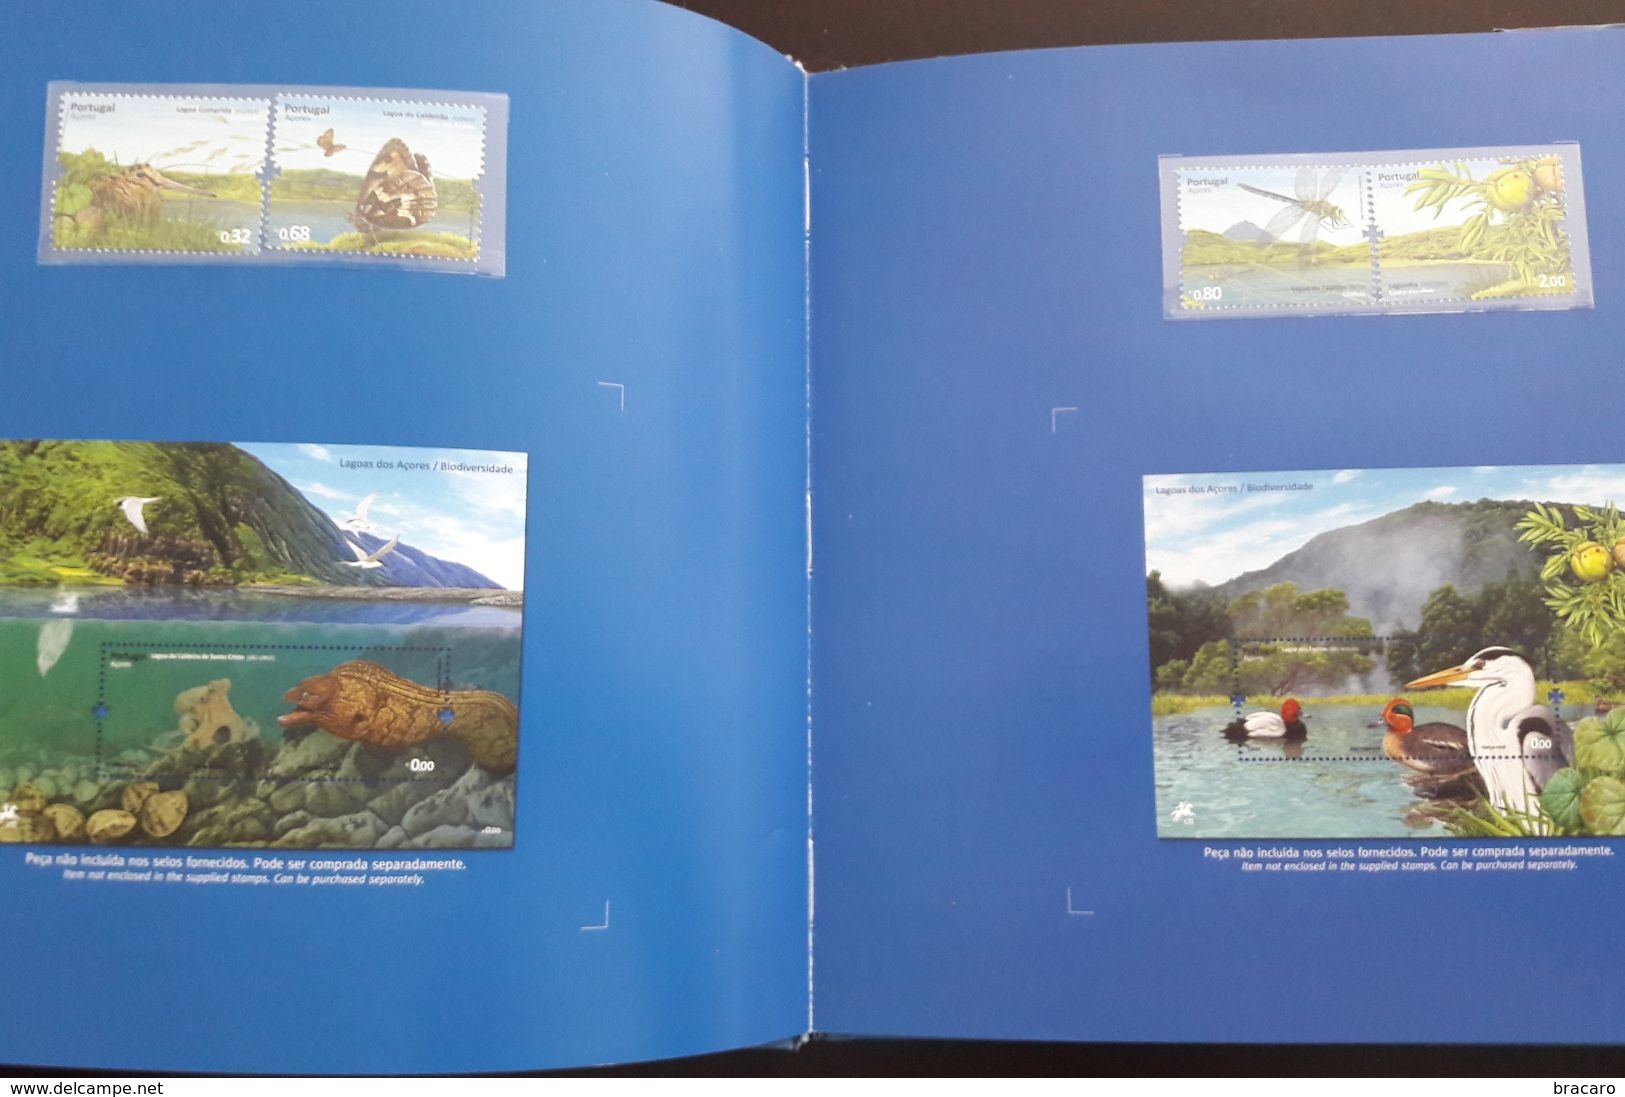 PORTUGAL - O MEU ALBUM DE SELOS / MY STAMP ALBUM - Book - Includes 47 Stamps 2009 MNH - Booklets